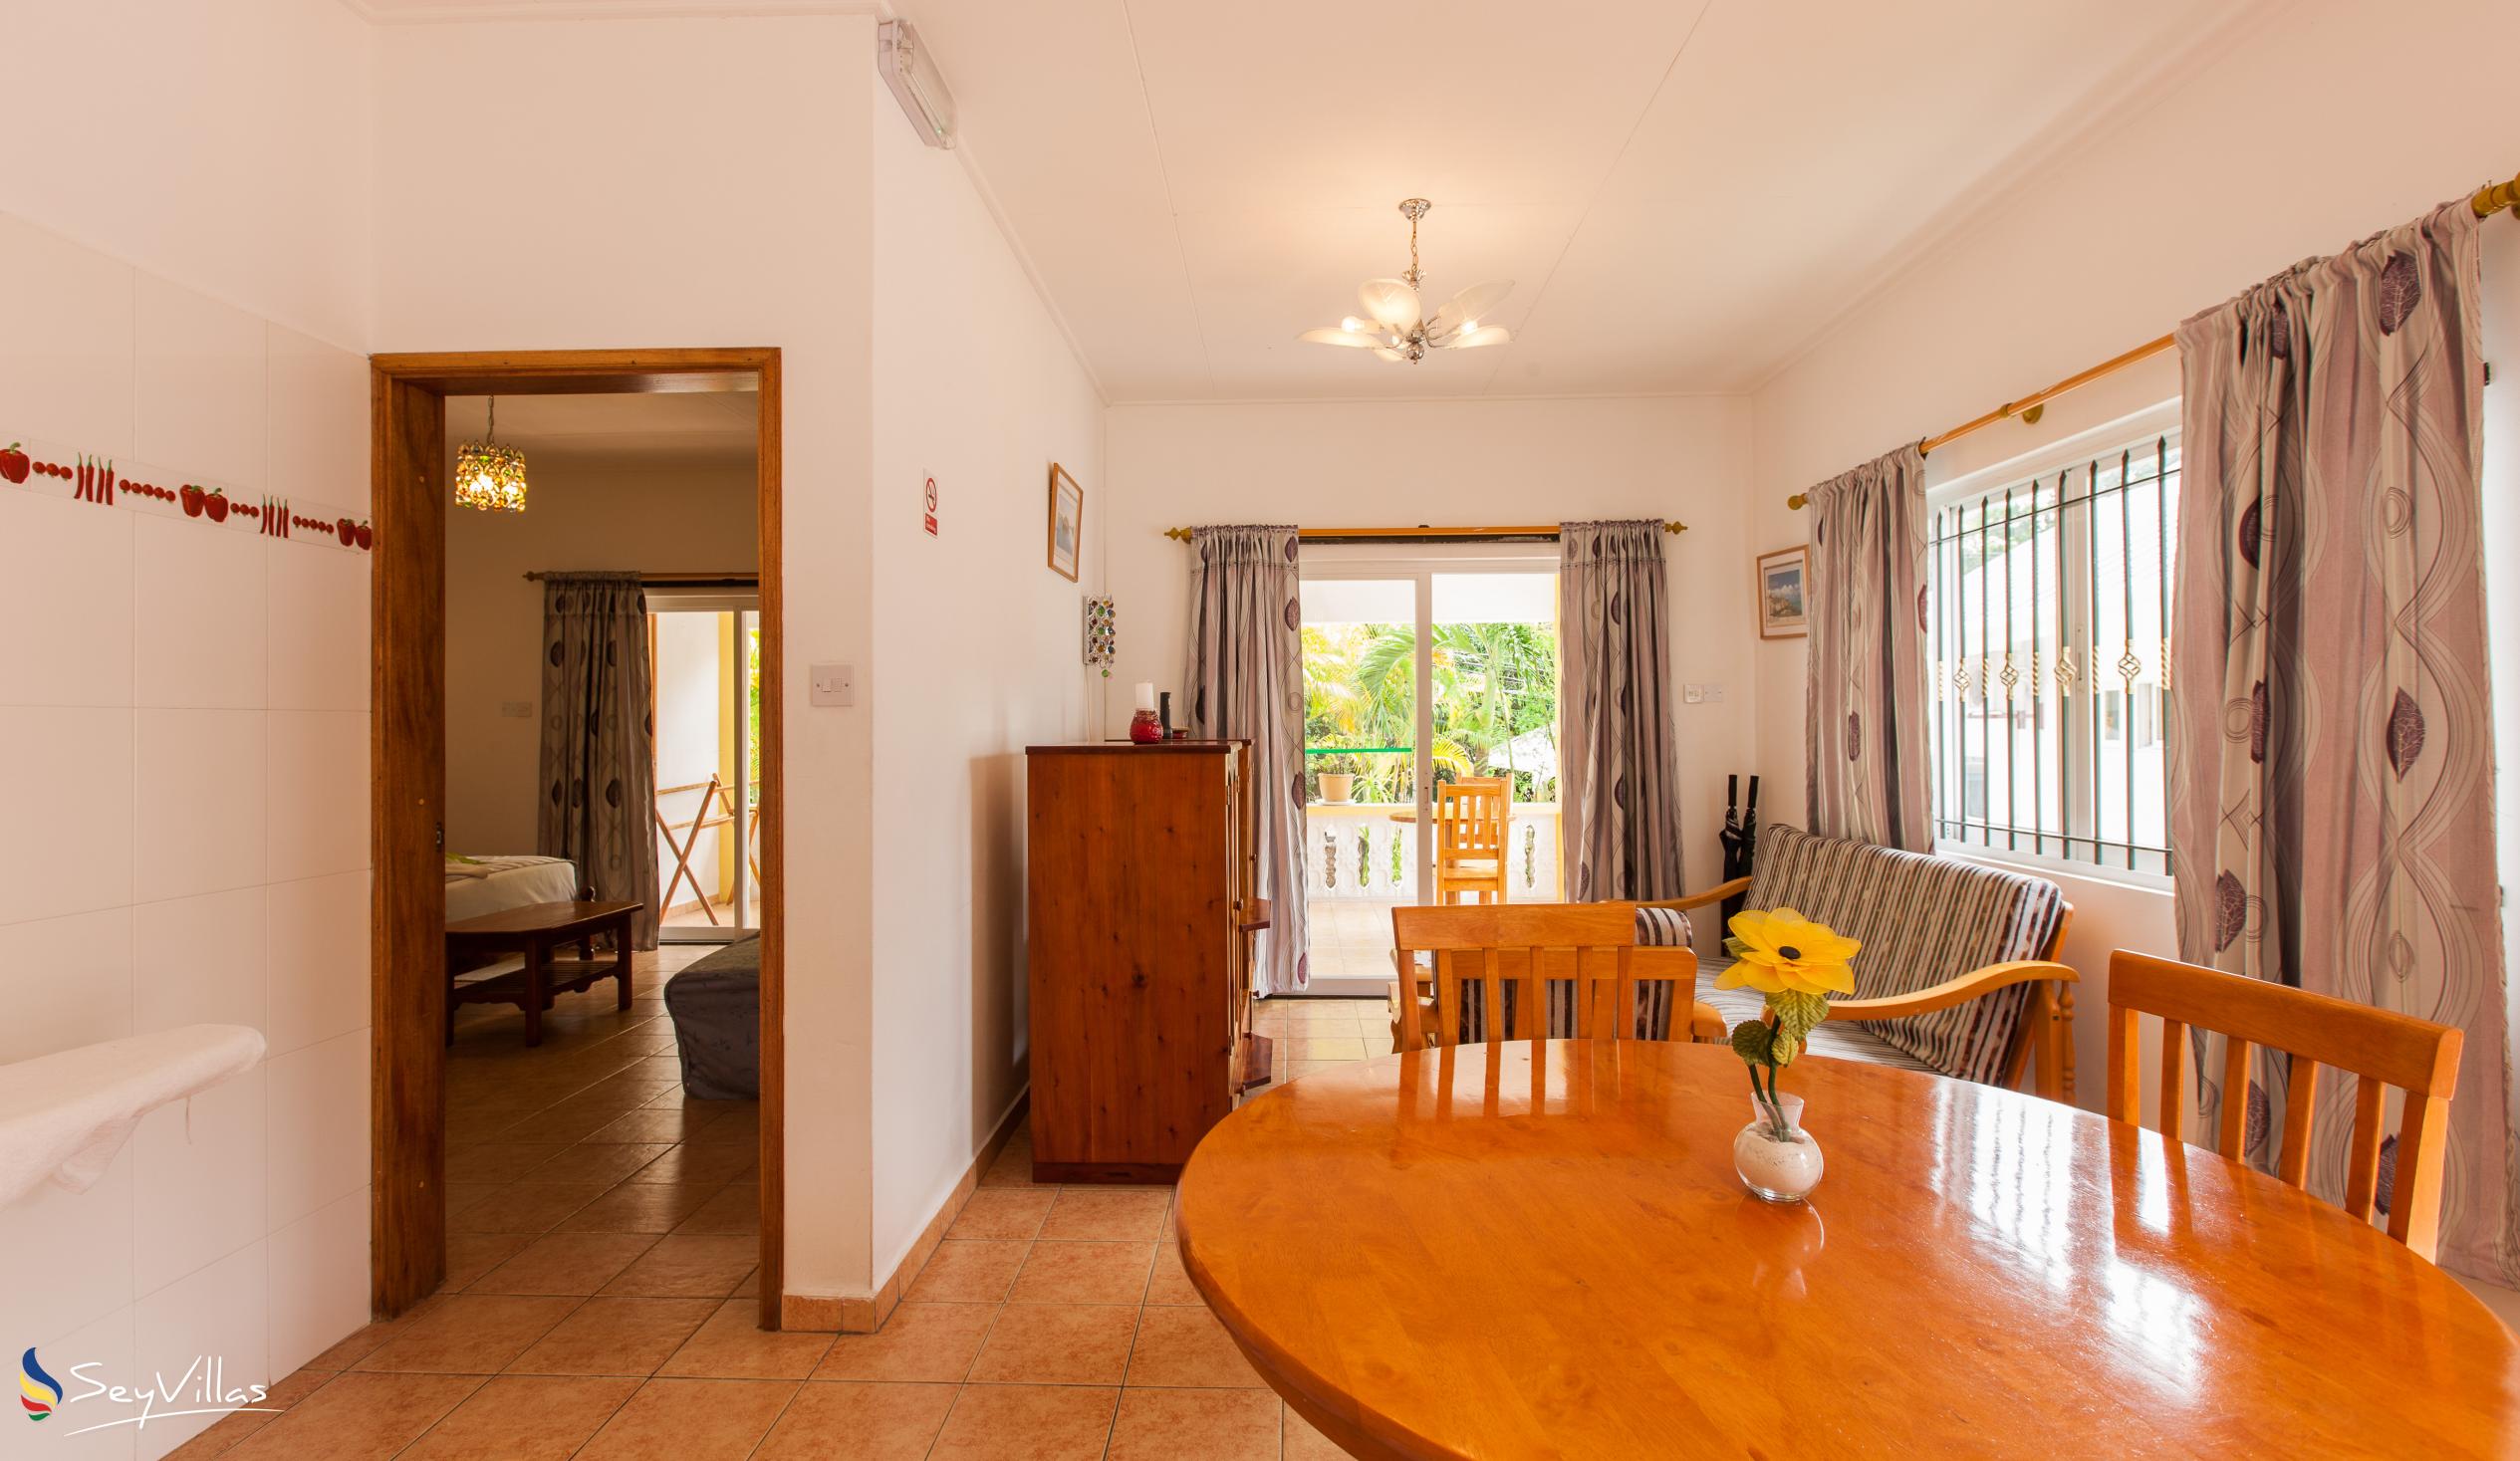 Photo 55: Acquario Villa - 1-Bedroom Apartment - Praslin (Seychelles)